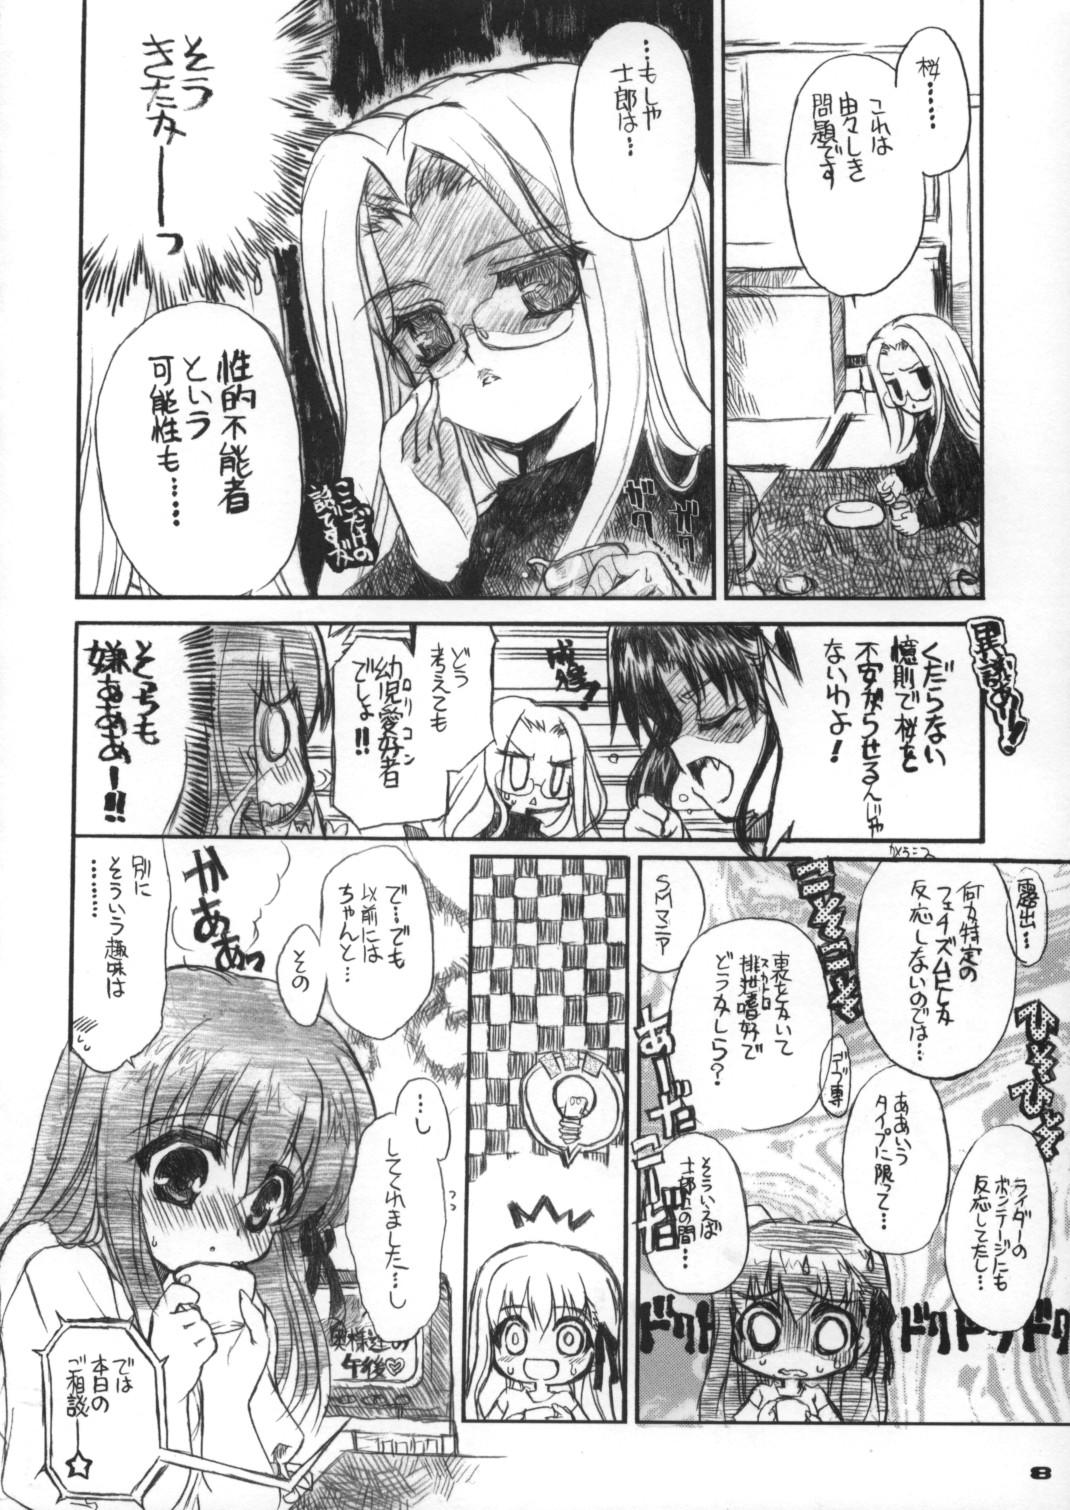 Safadinha Neko-bus Tei no Hon Vol.6 Sakurabiyori - Fate stay night Tease - Page 7